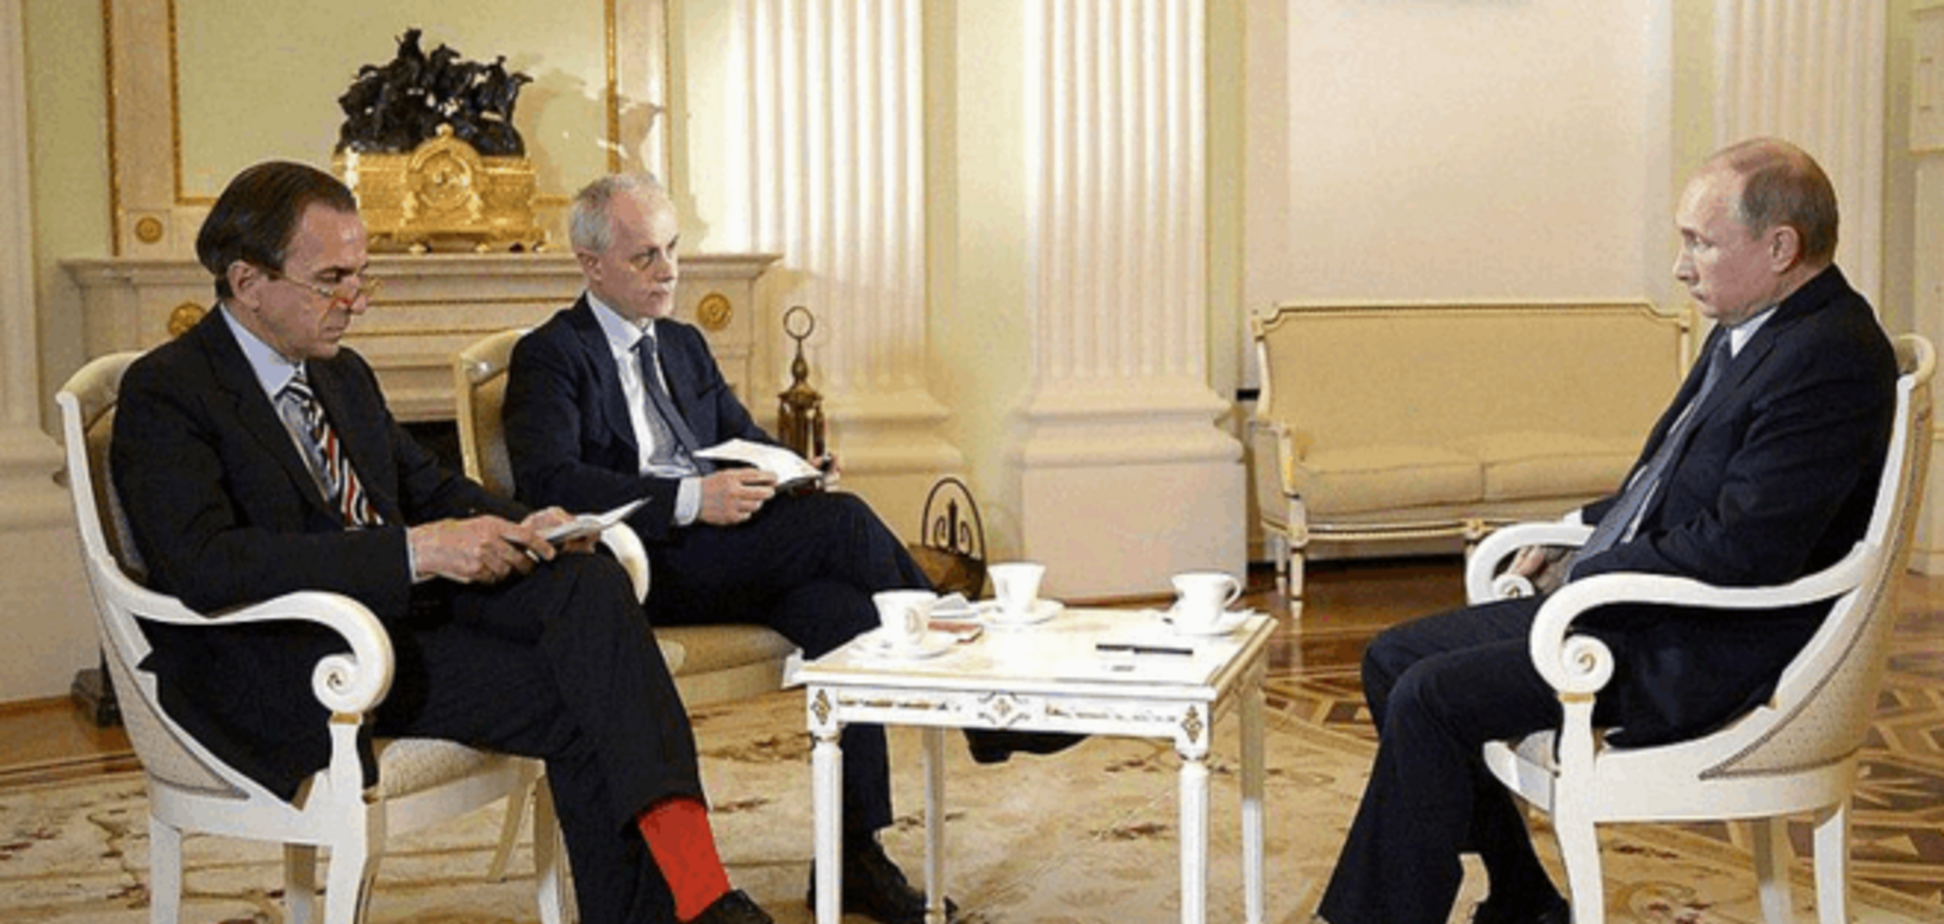 Умора! Итальянец явился к Путину в красных носках: фотофакт